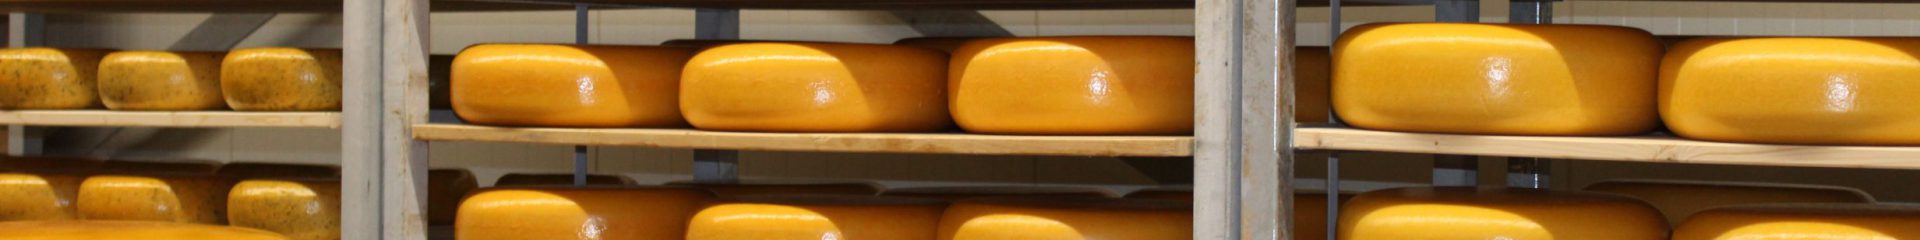 Nieuw: Aspargio kaas van de boerderij met asperges